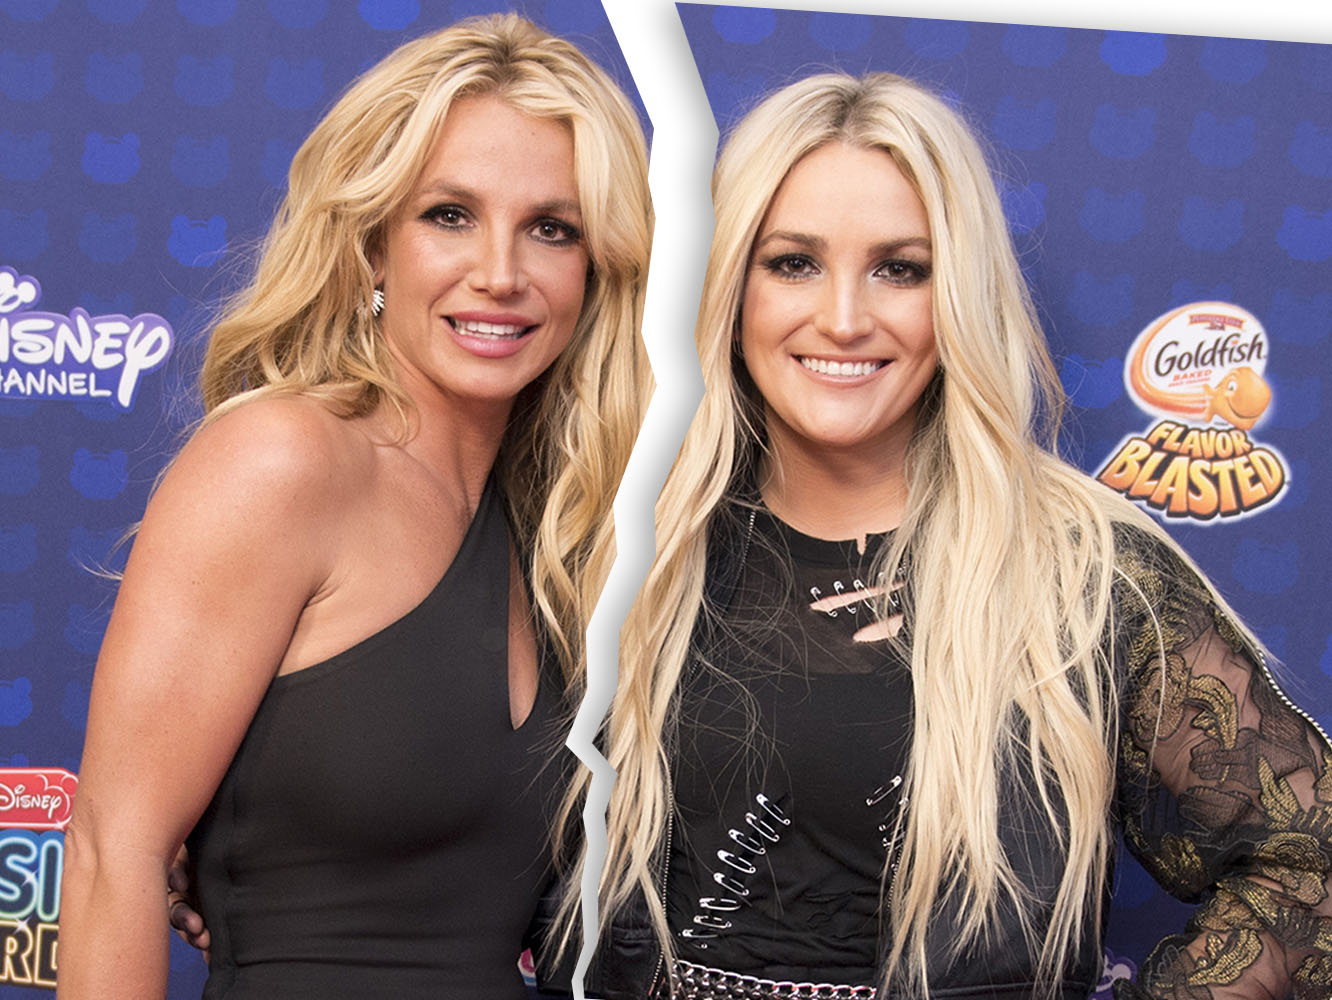  Jamie Lynn Spears reacciona a los rumores de despido en Netflix y “sale” “en” “apoyo” de su hermana Britney